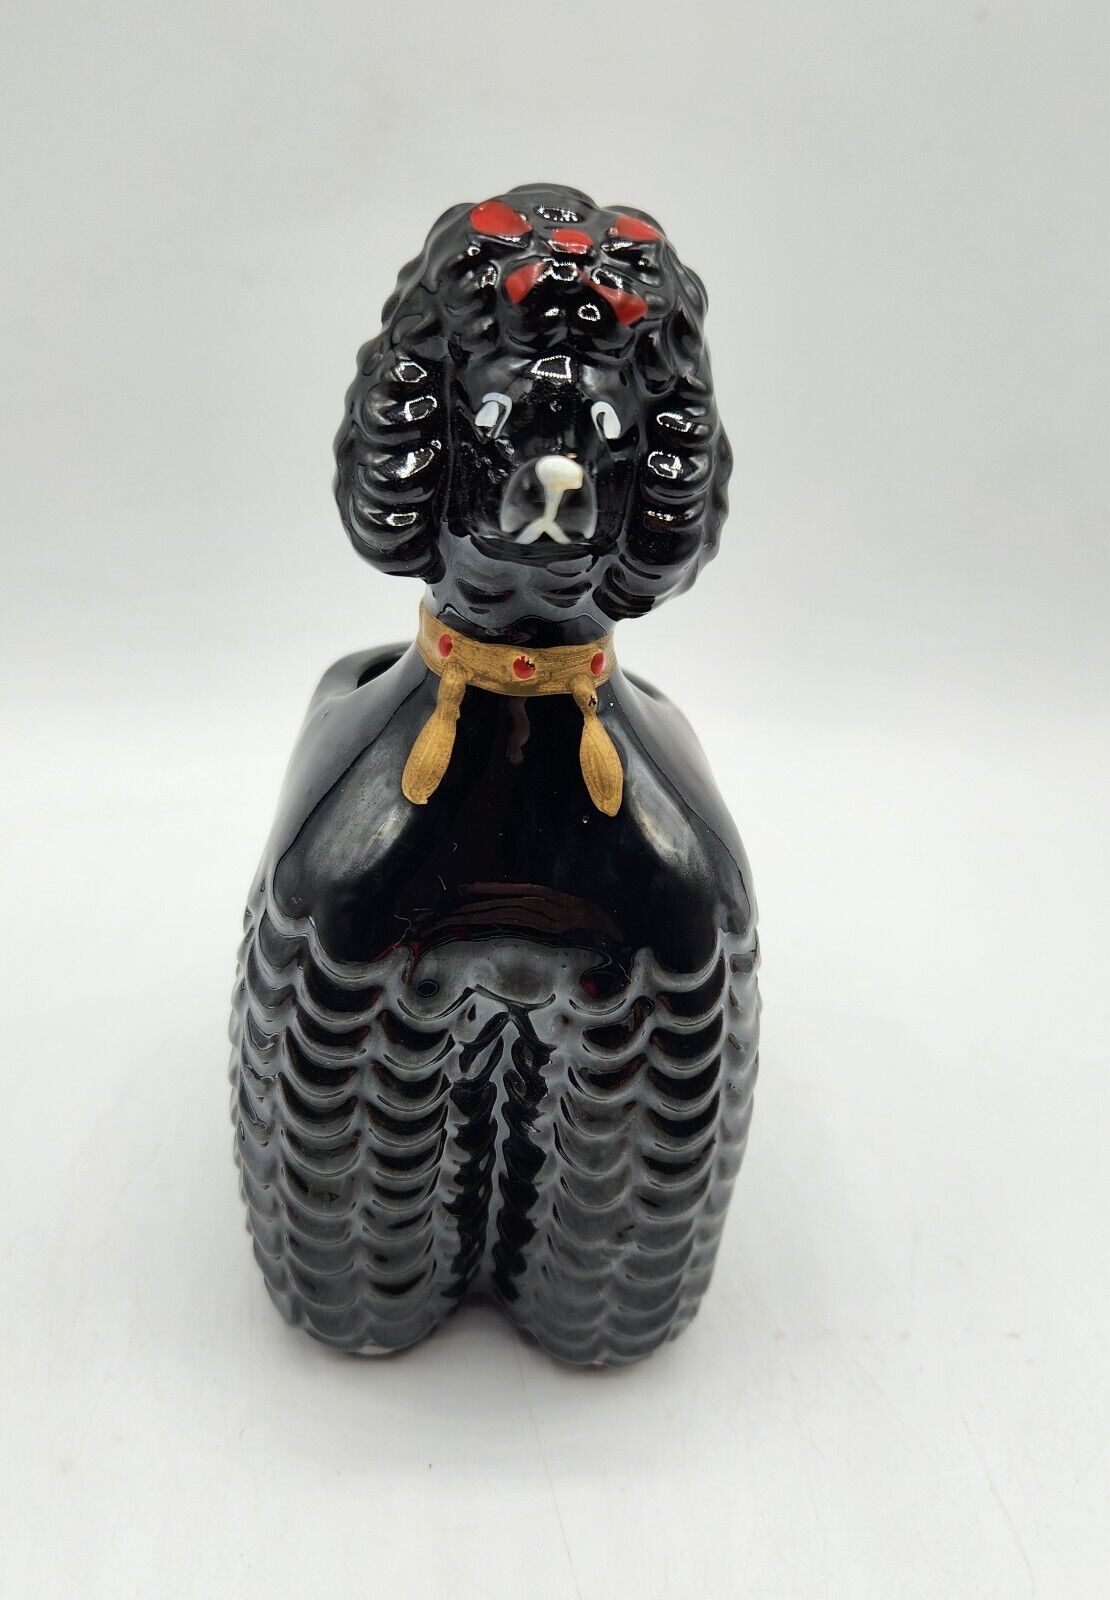 1950s Black Poodle Figural Dog Planter Made in Japan